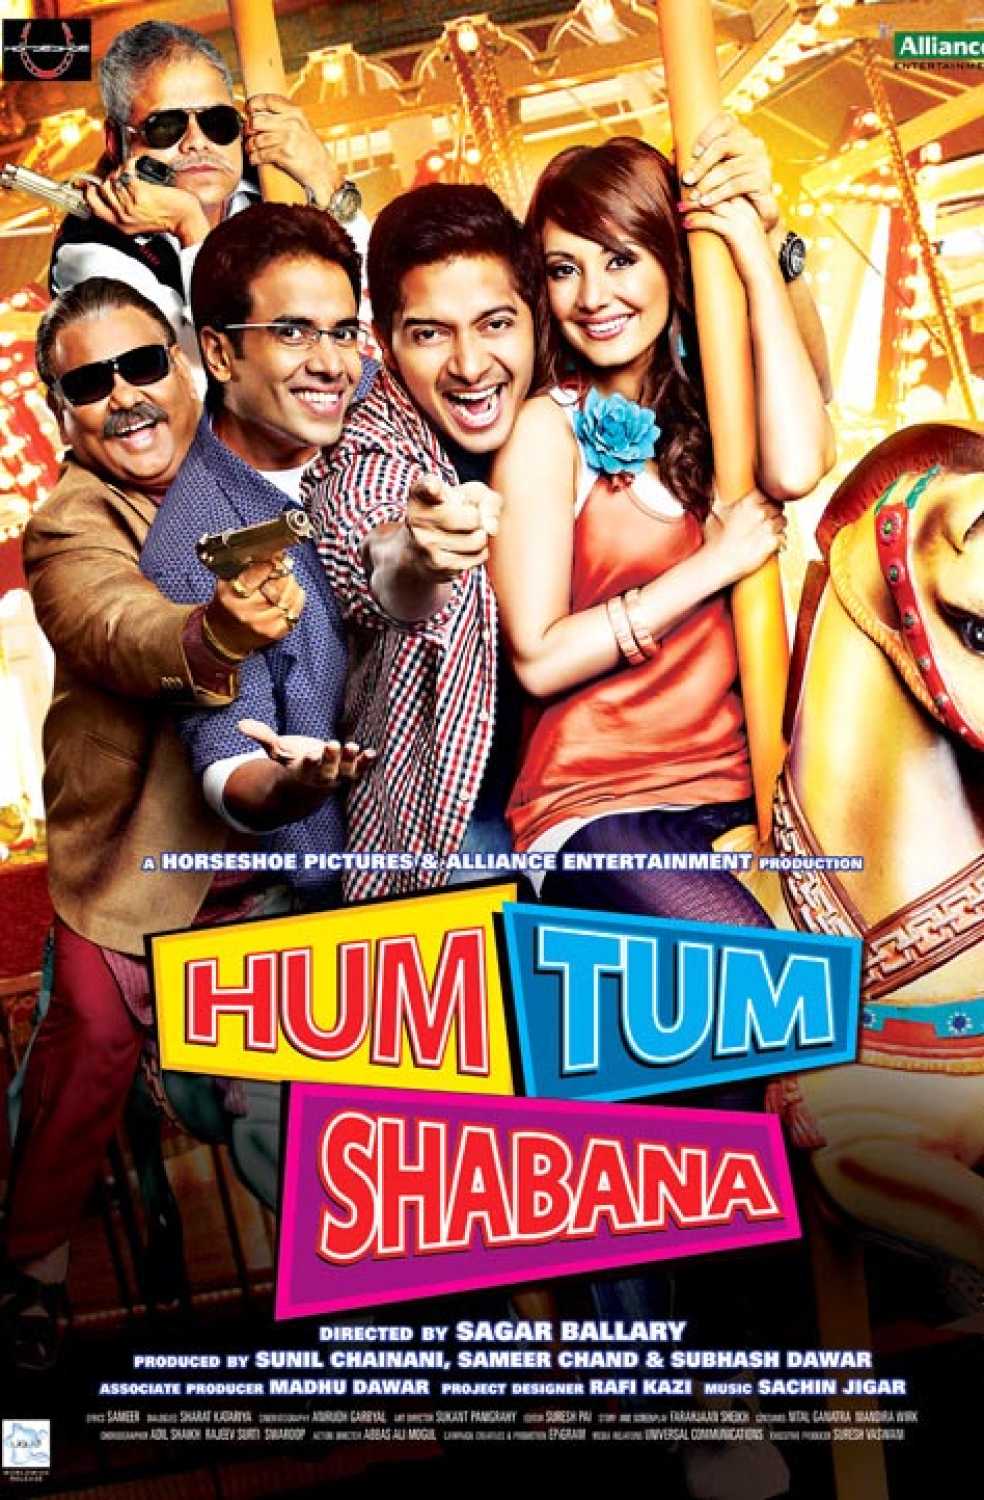 Hum Tum Shabana (2011) Hindi WEB-DL H264 AAC 1080p 720p 480p Download